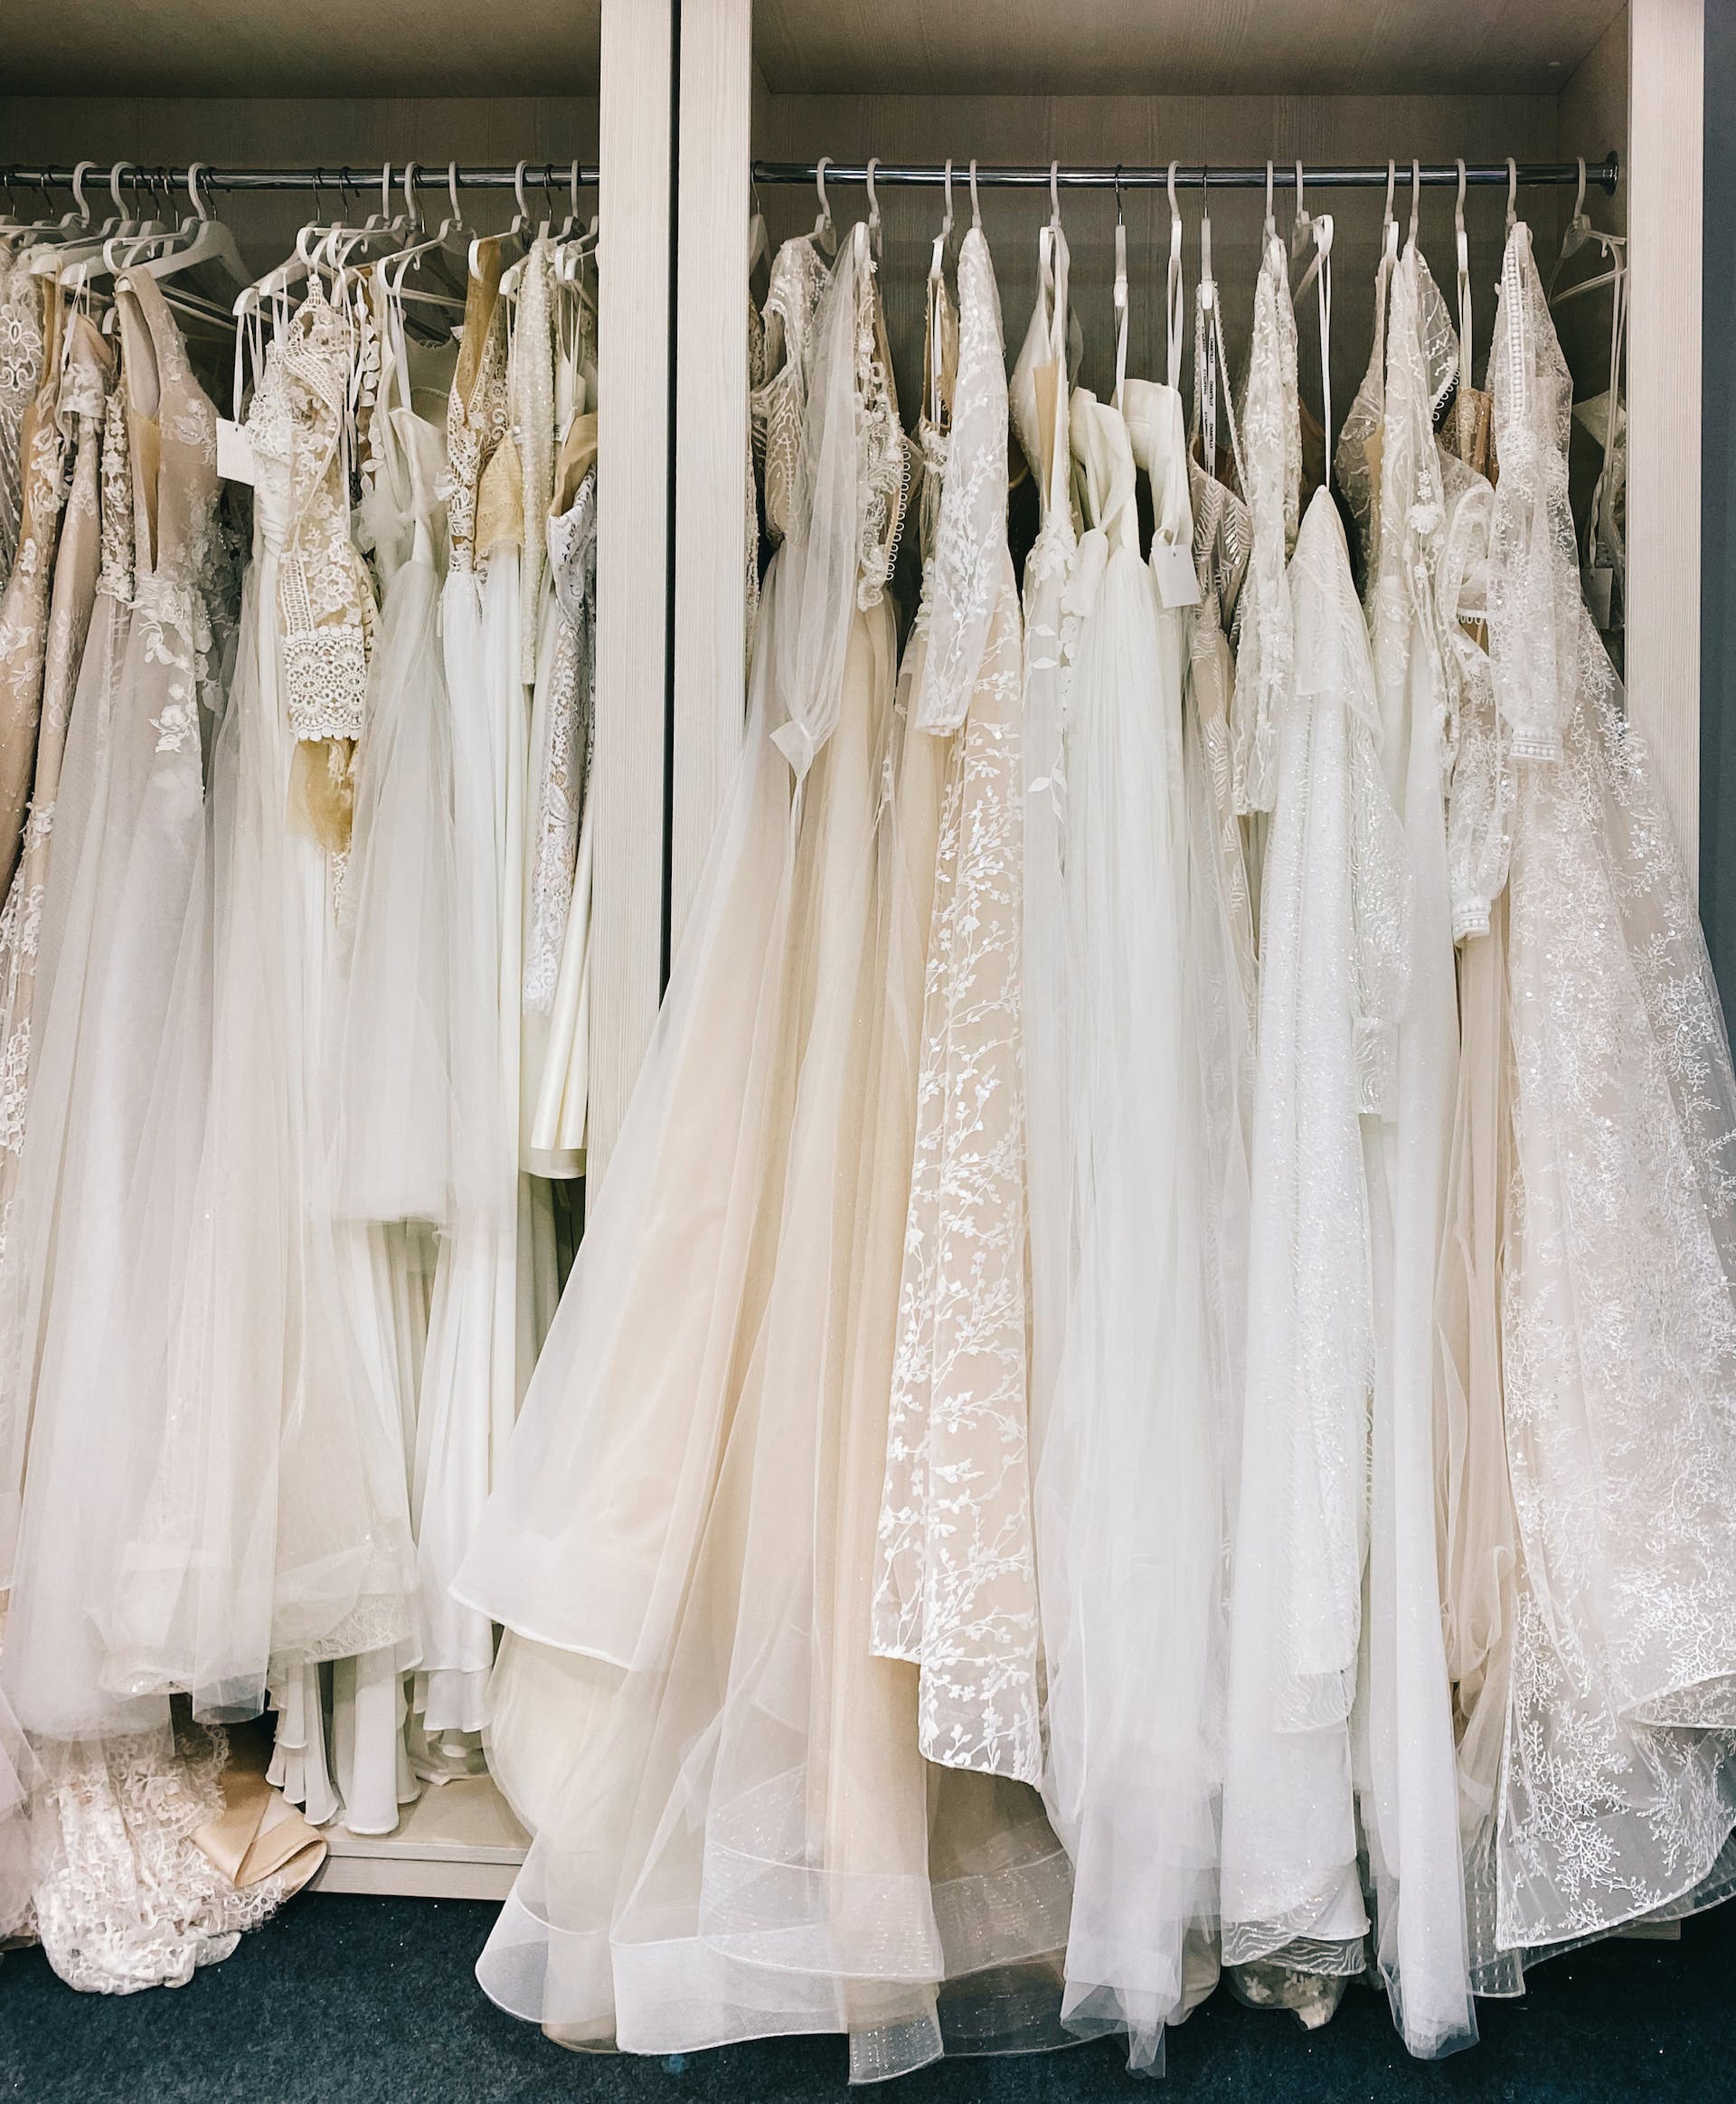 Robes de mariée suspendues dans une boutique | Source : Pexels